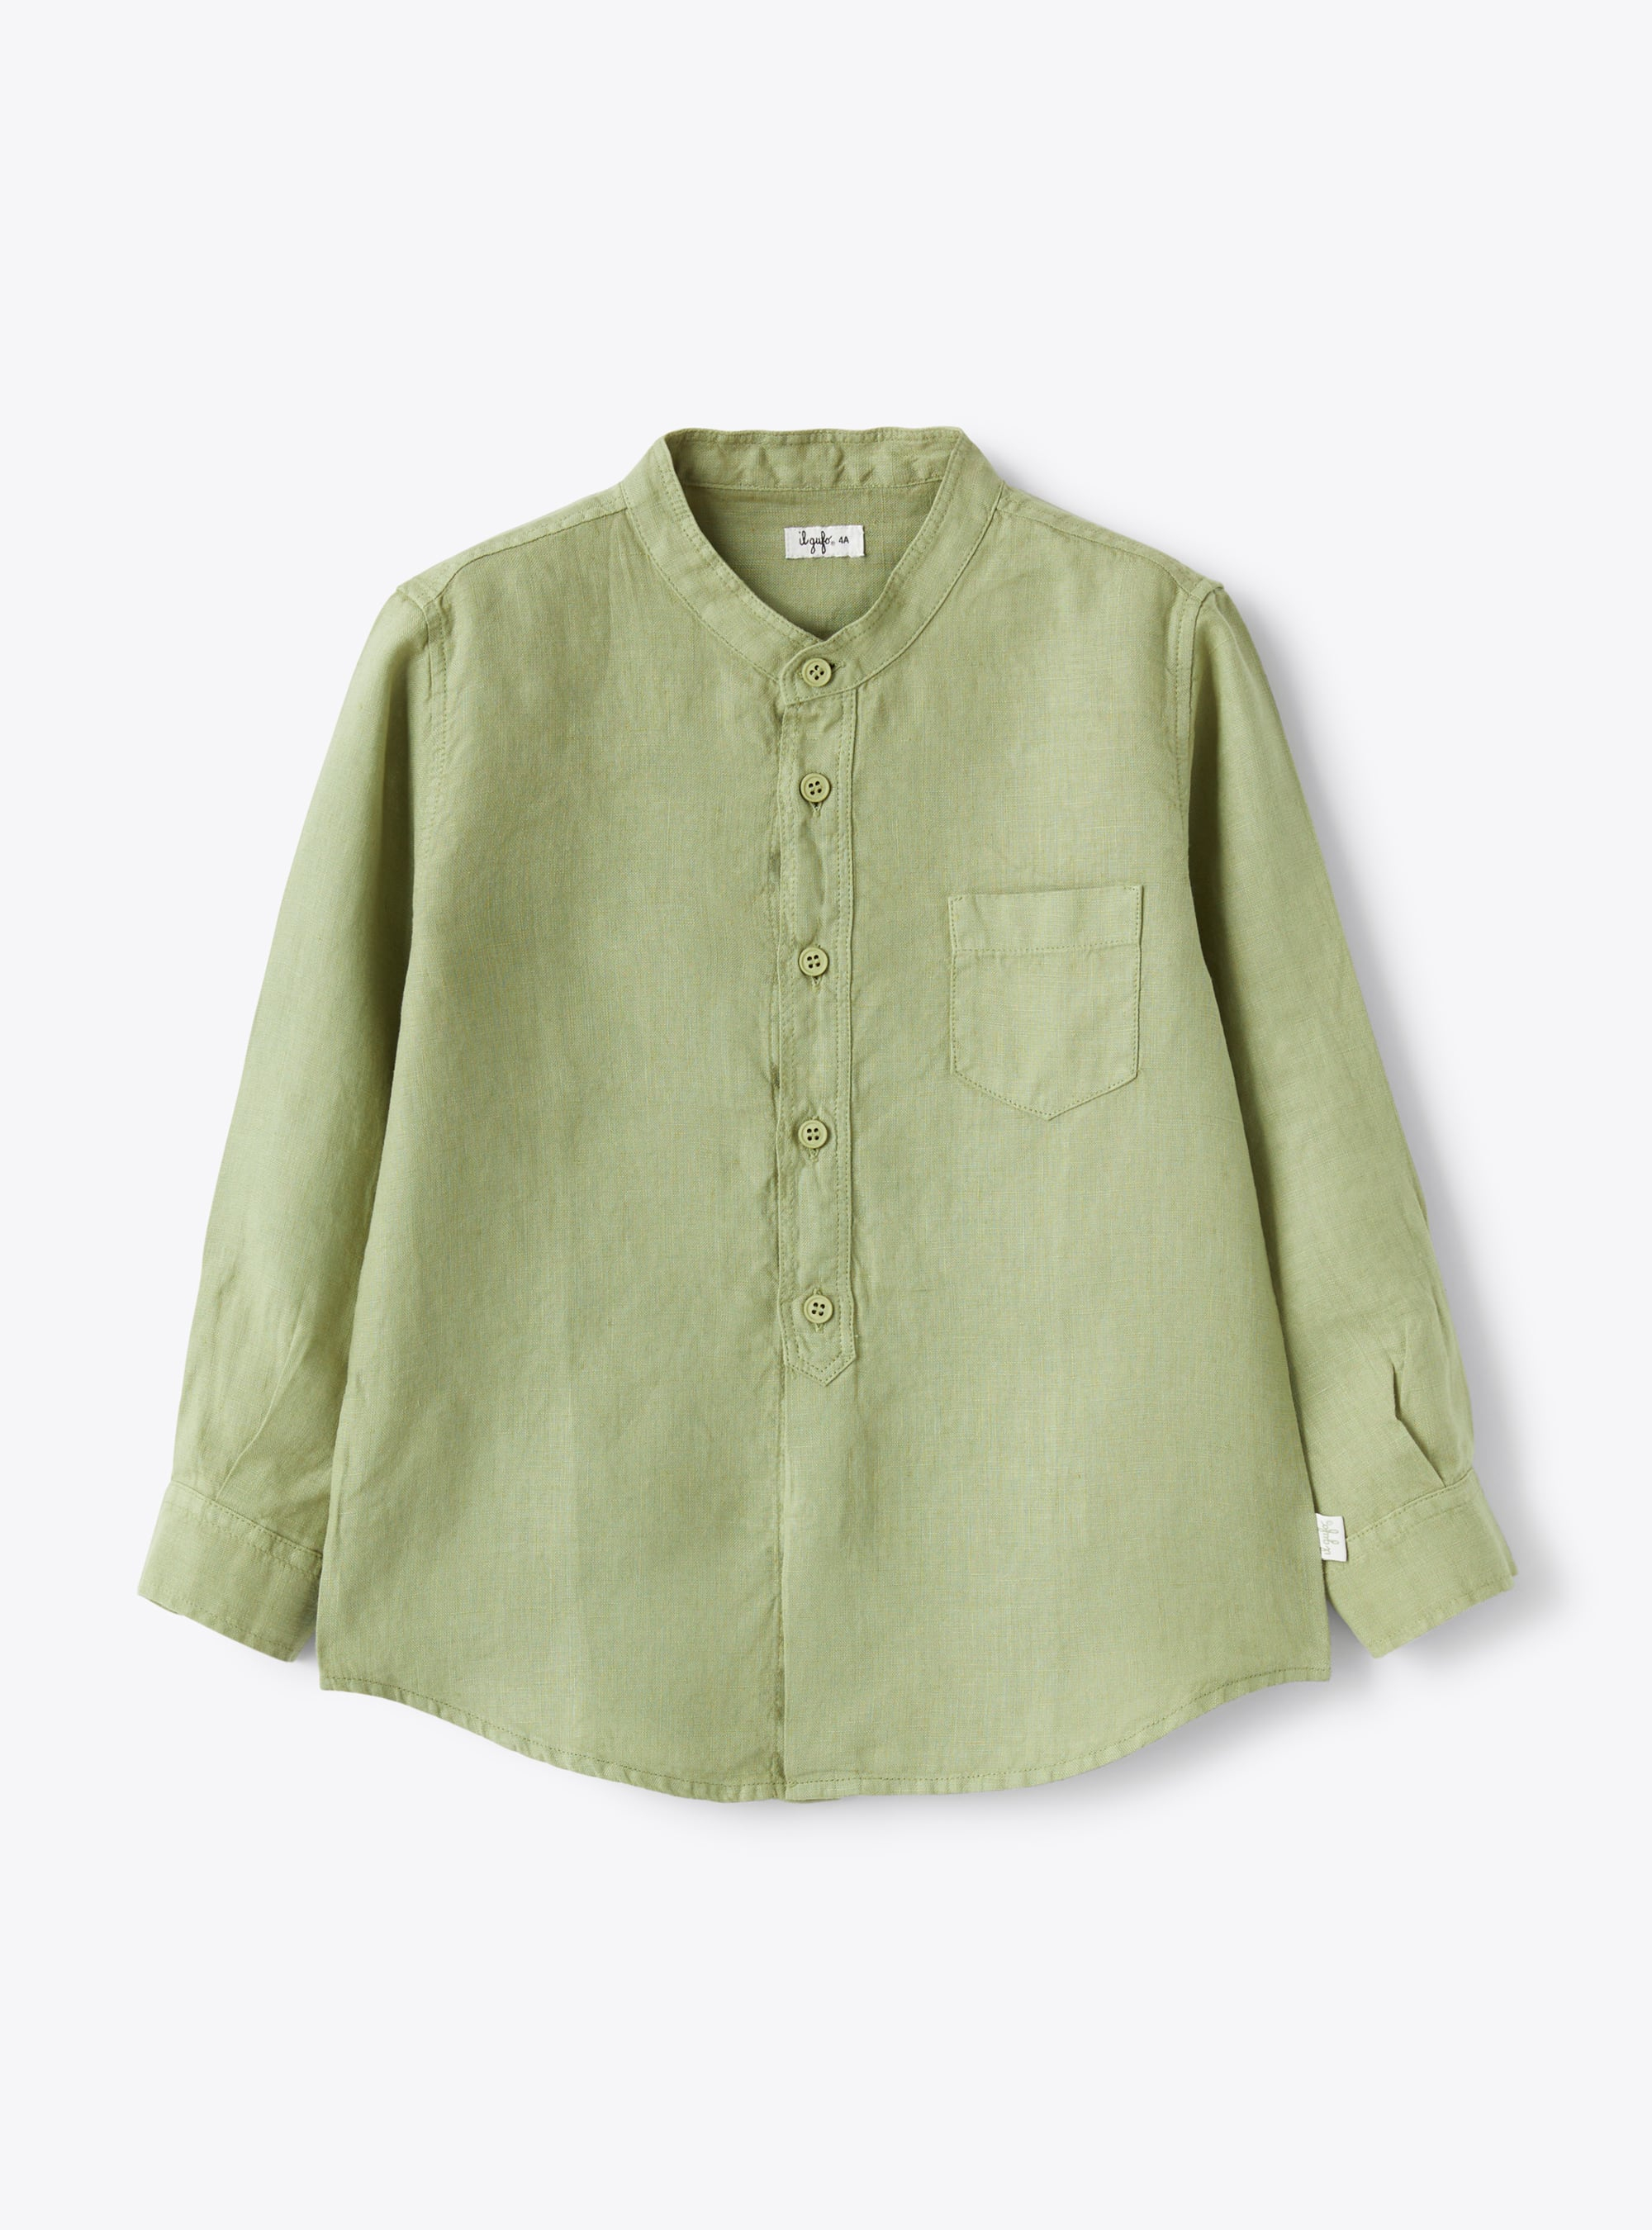 Mandarin-collar shirt in sage-green linen - Green | Il Gufo